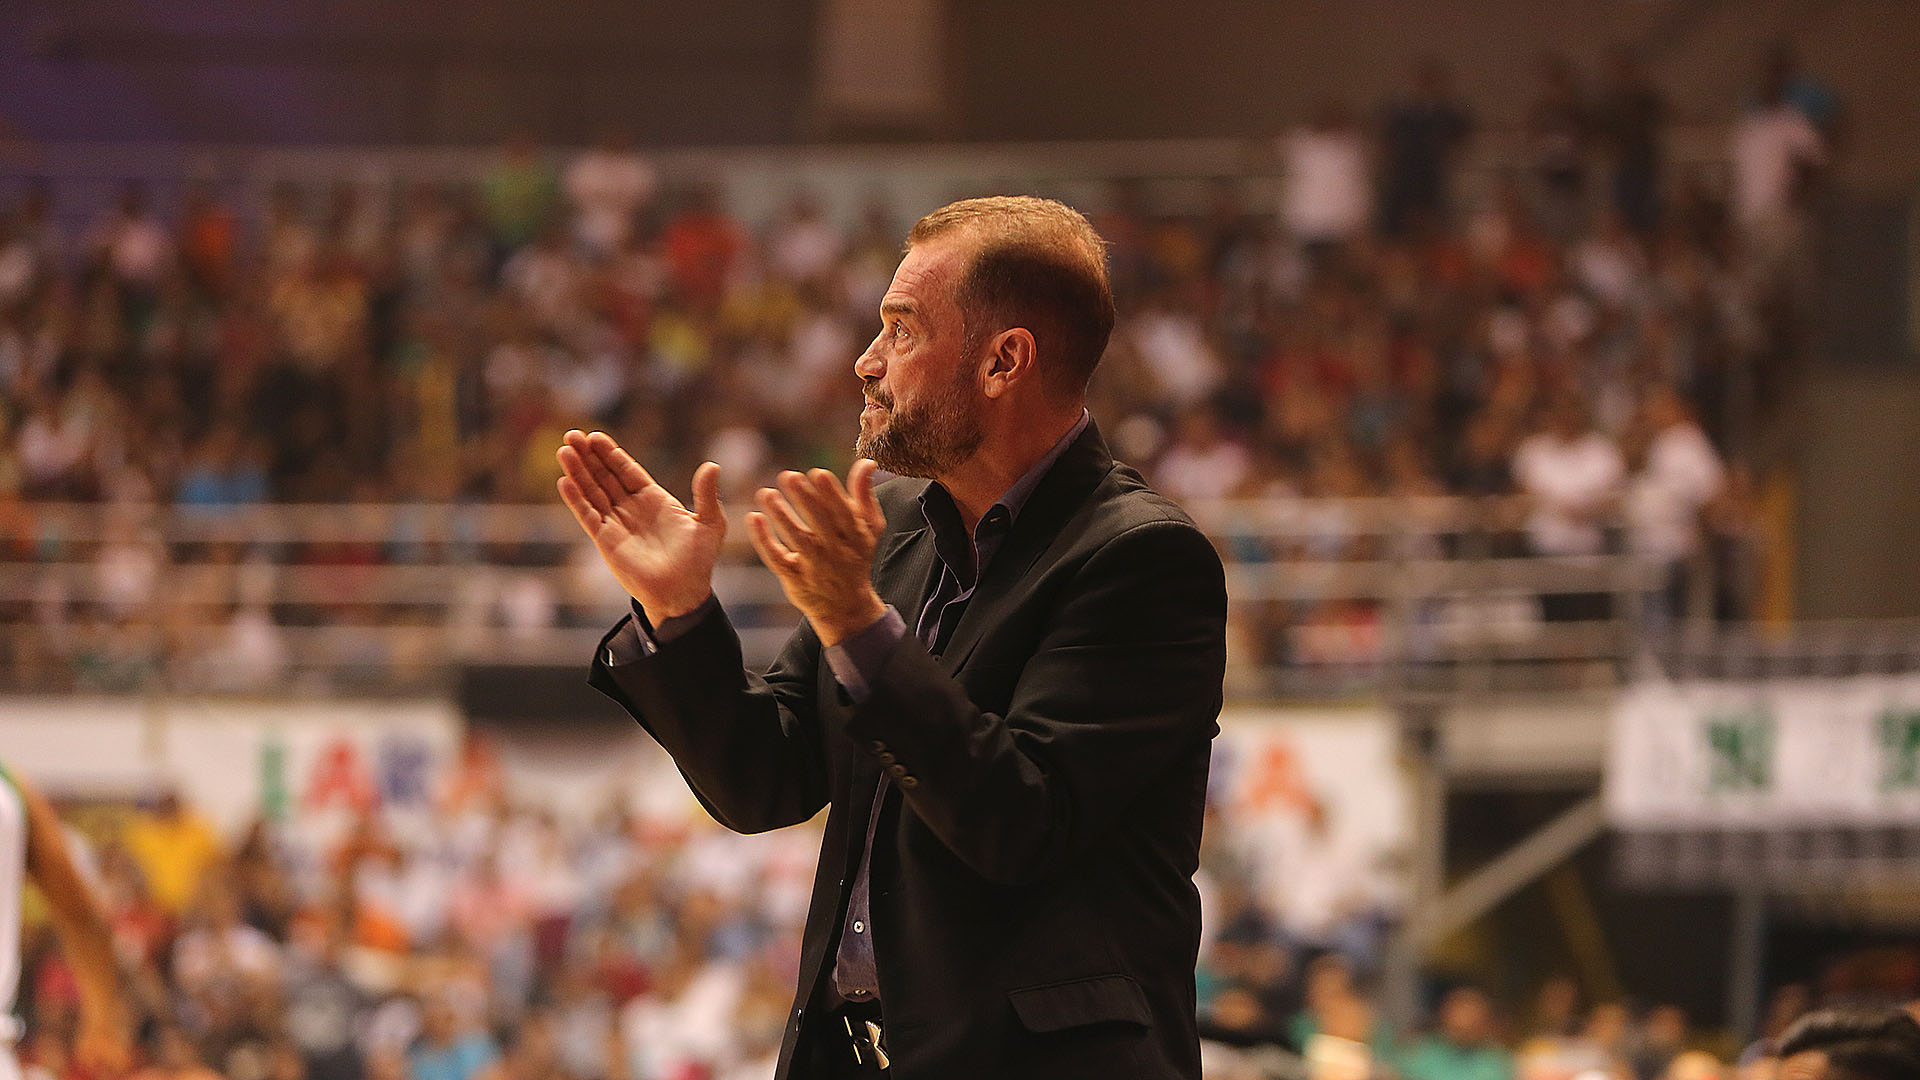 Néstor "Che" García dirige a la selección desde 2014. Lideró al equipo para obtener un campeonato suramericano y un oro en FIBA Américas 2015